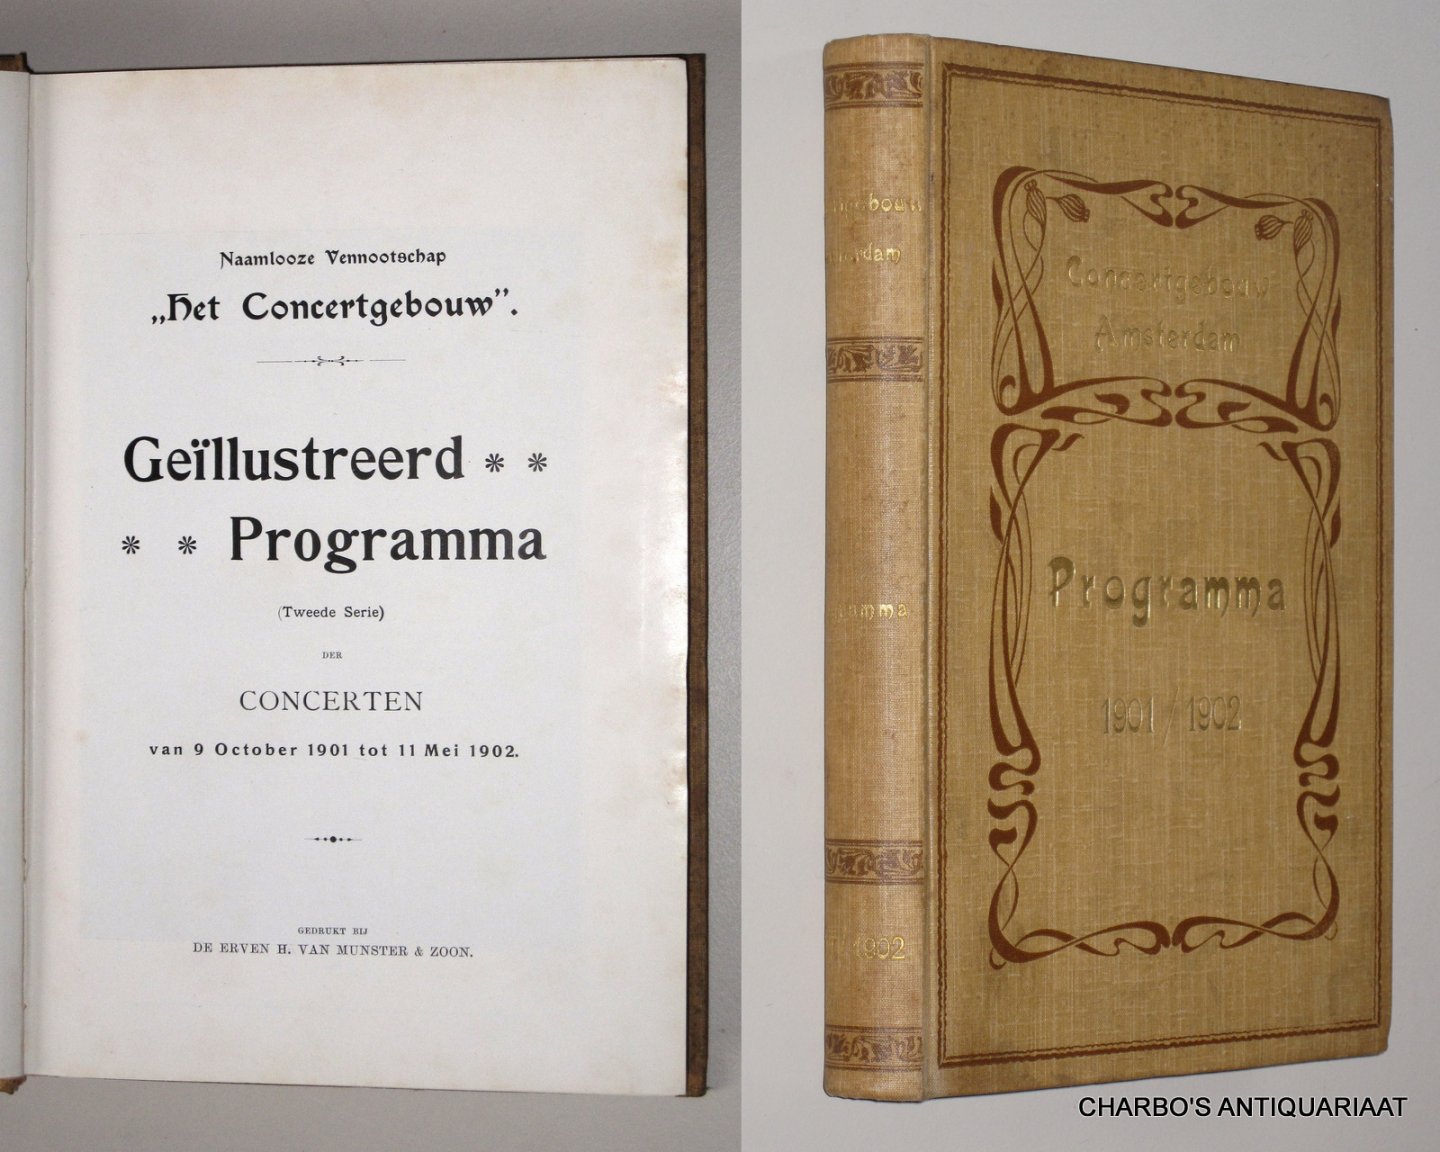 CONCERTGEBOUW, NAAMLOOZE VENNOOTSCHAP HET, - Geïllustreerd programma (tweede serie) der concerten van 9 October 1901 tot 11 Mei 1902.